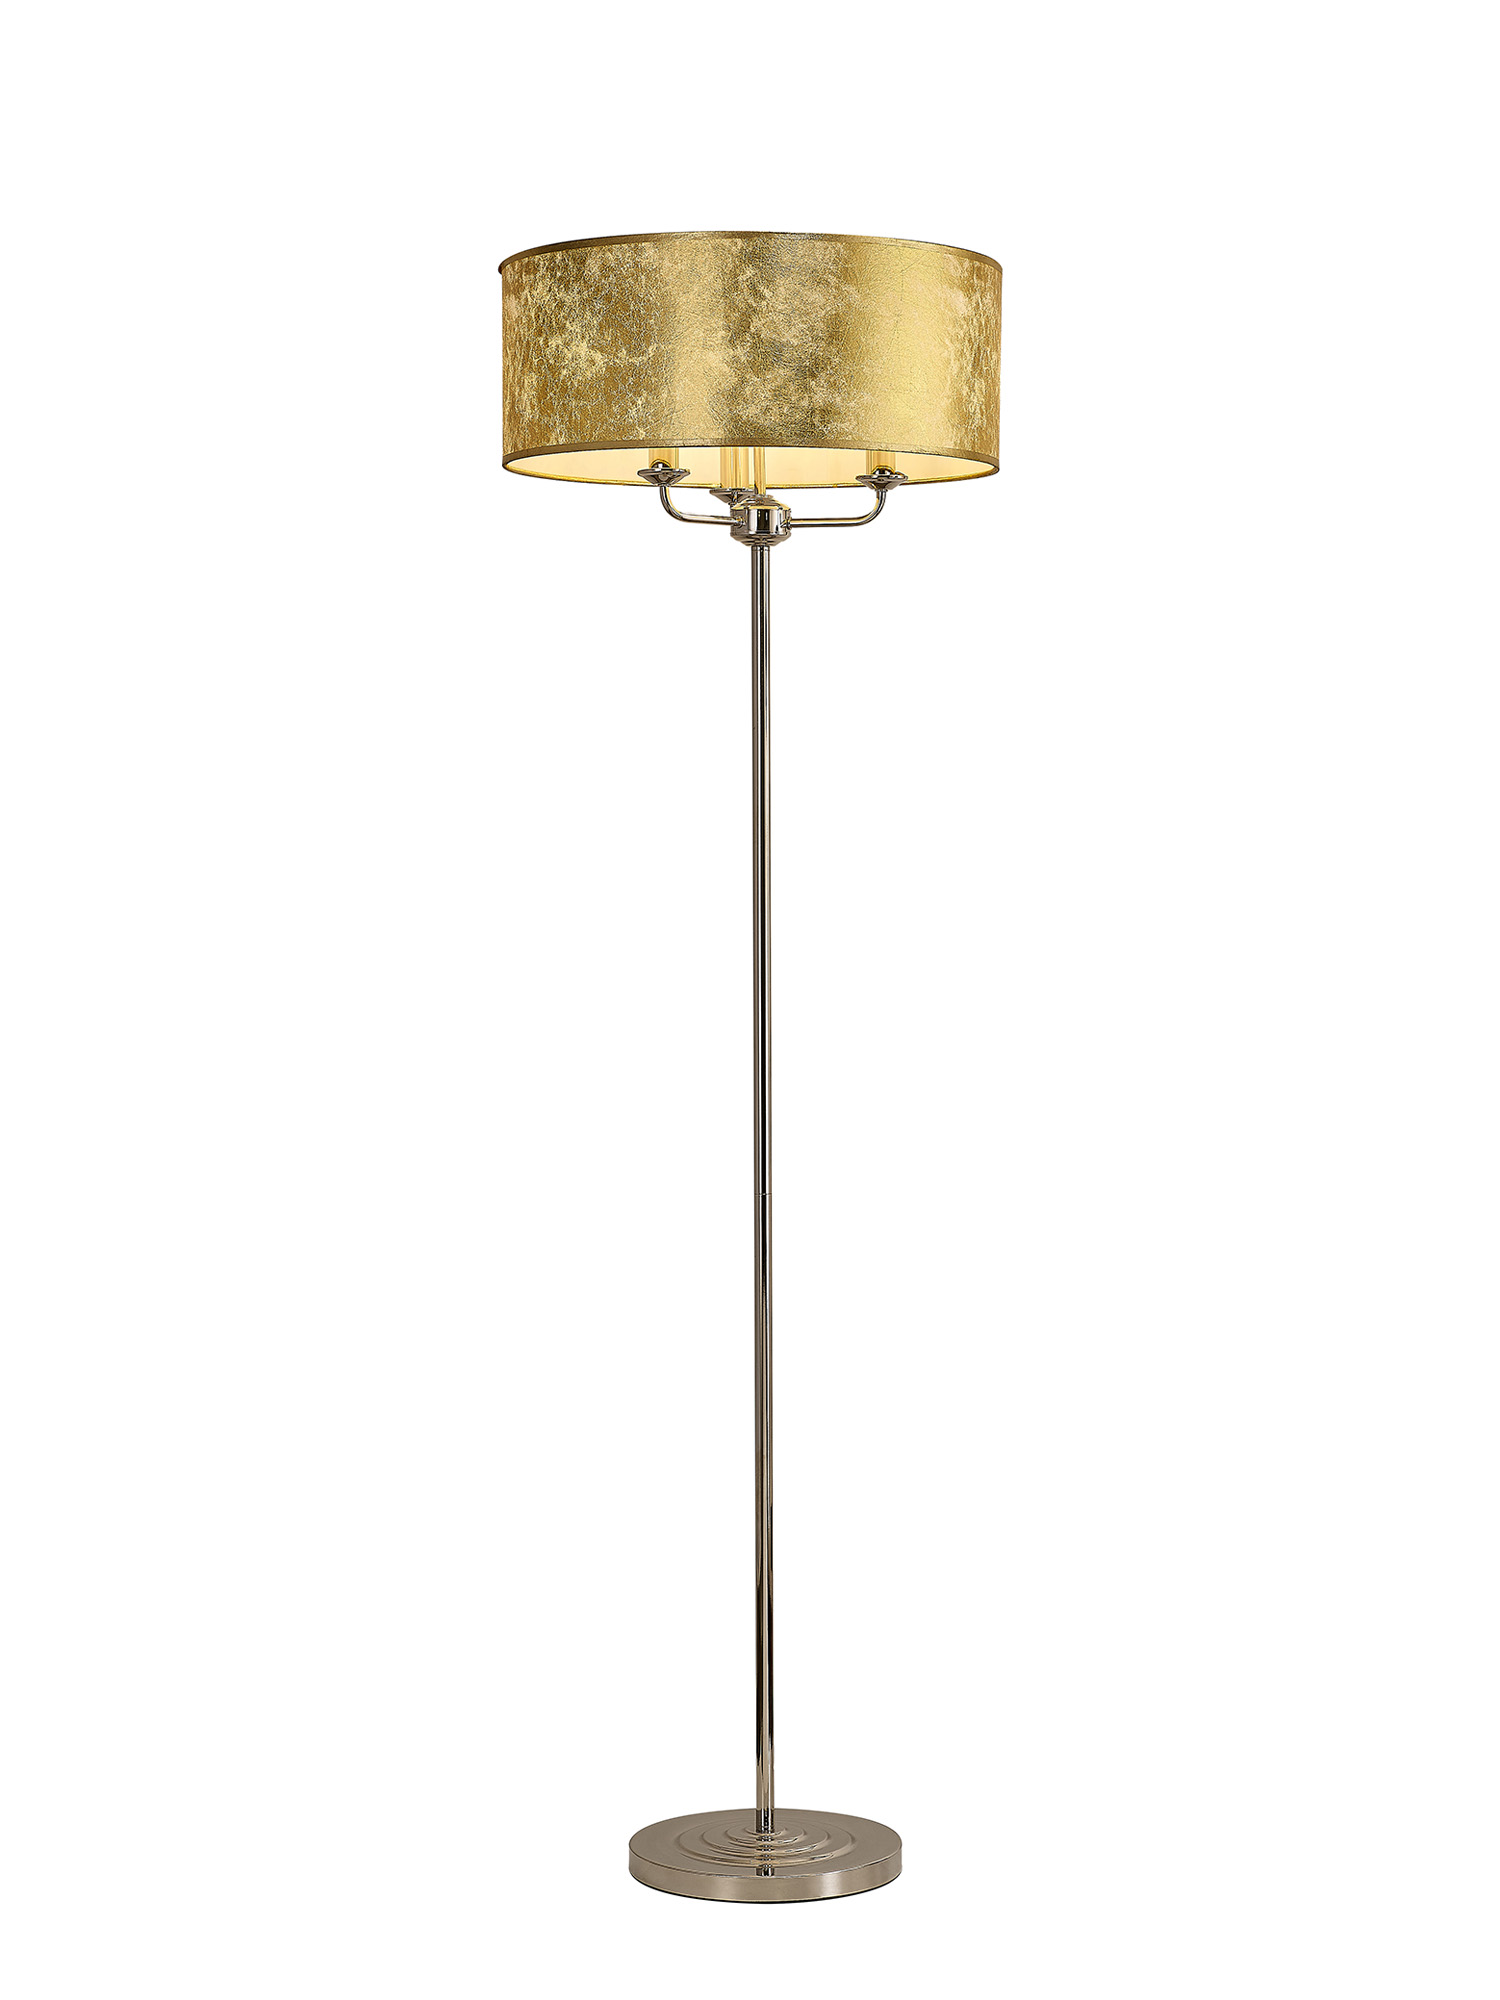 DK0899  Banyan 45cm 3 Light Floor Lamp Polished Nickel, Gold Leaf